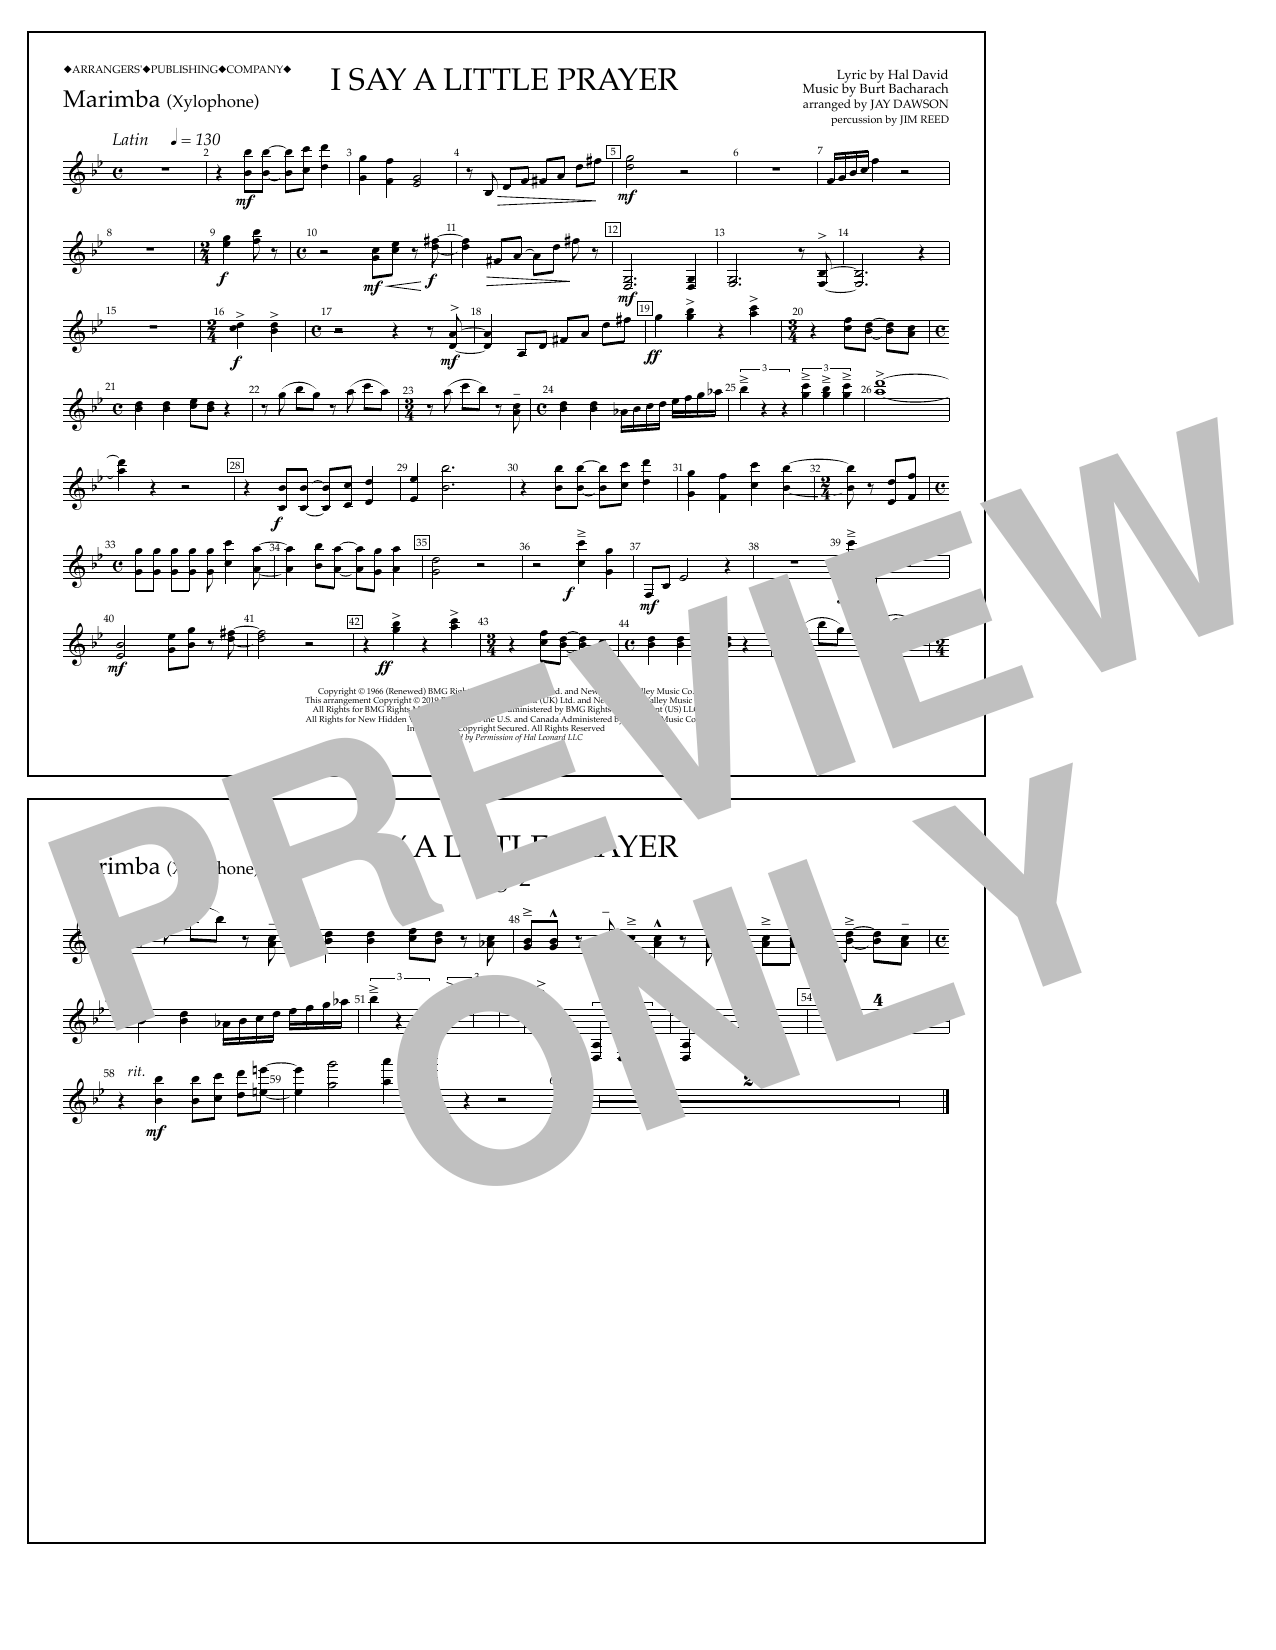 marching band sheet music pdf